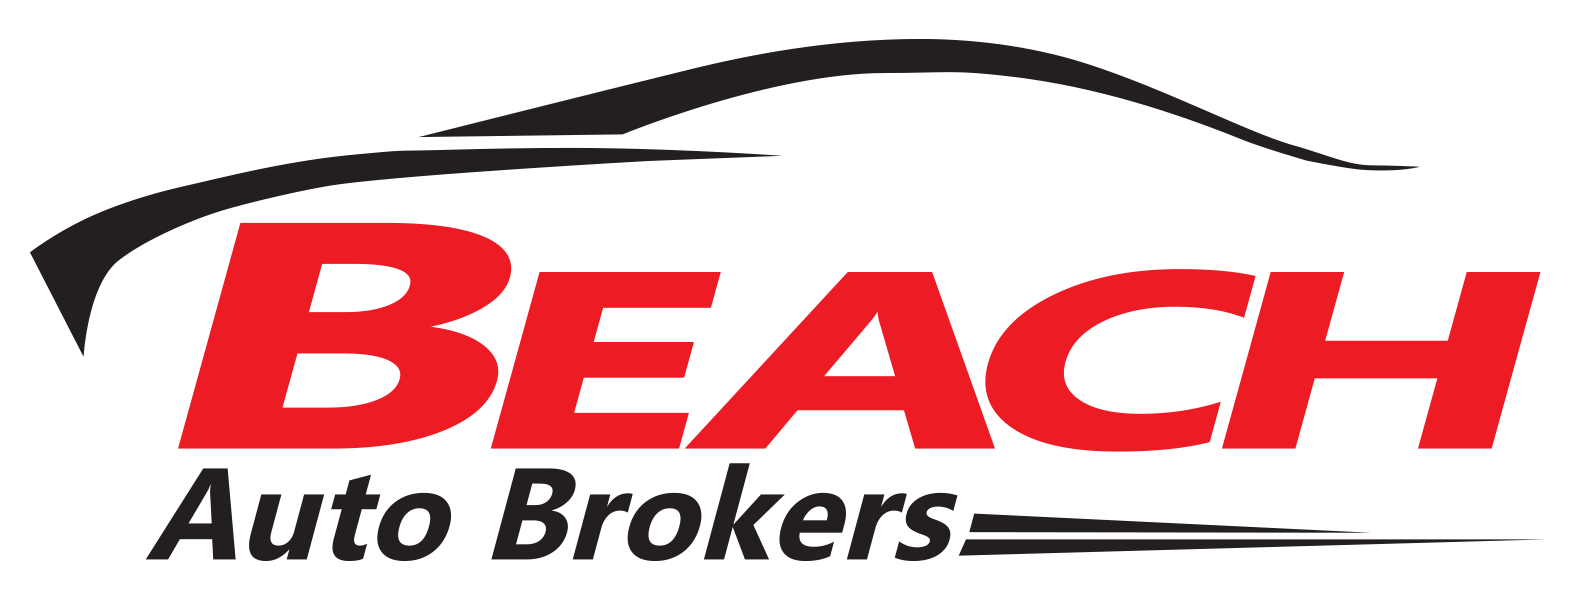 Used Car Sales Logo - Car Dealer Design Logo Png Images